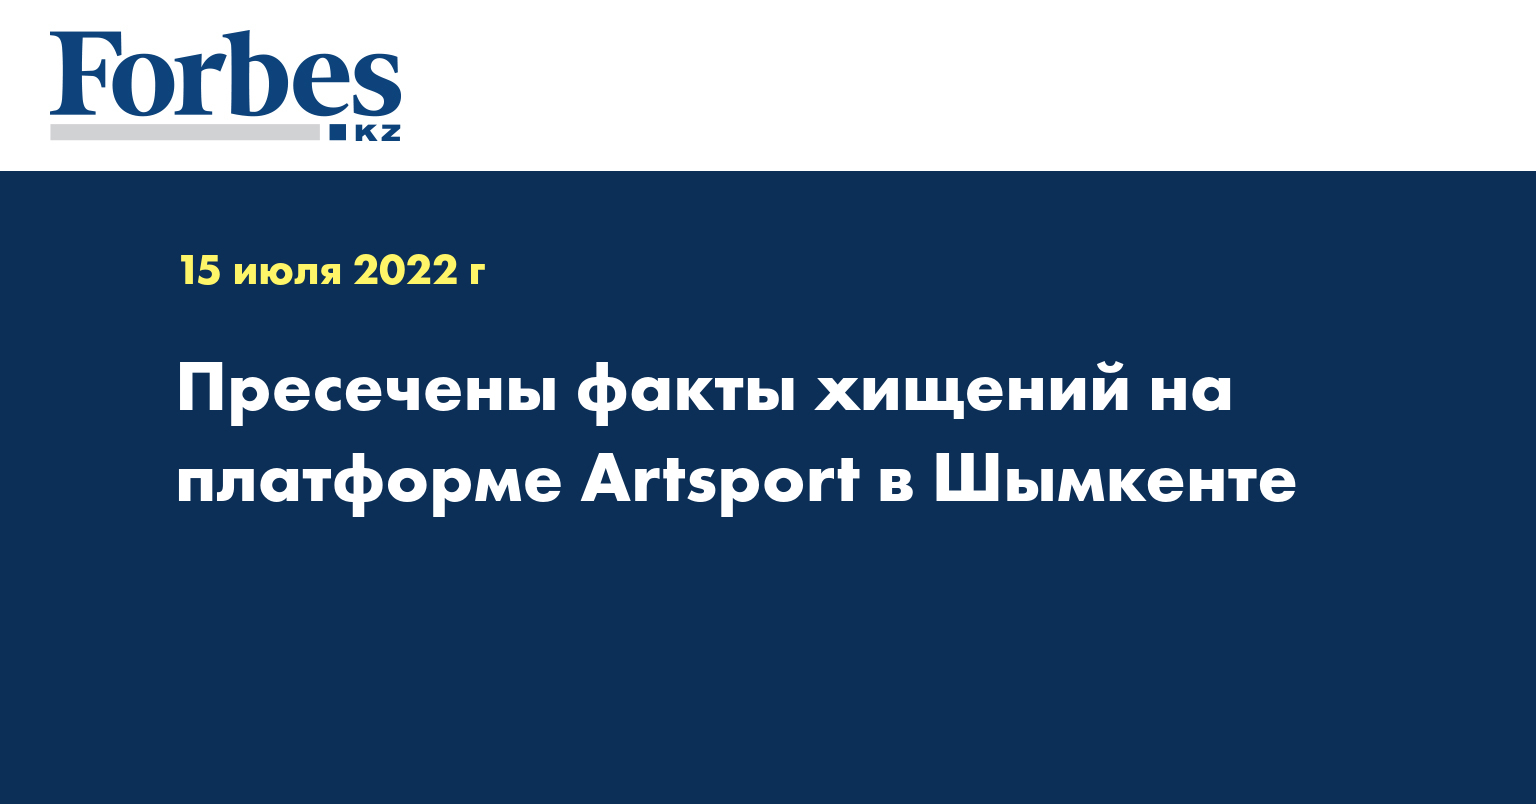 Пресечены факты хищений на платформе Аrtsport в Шымкенте